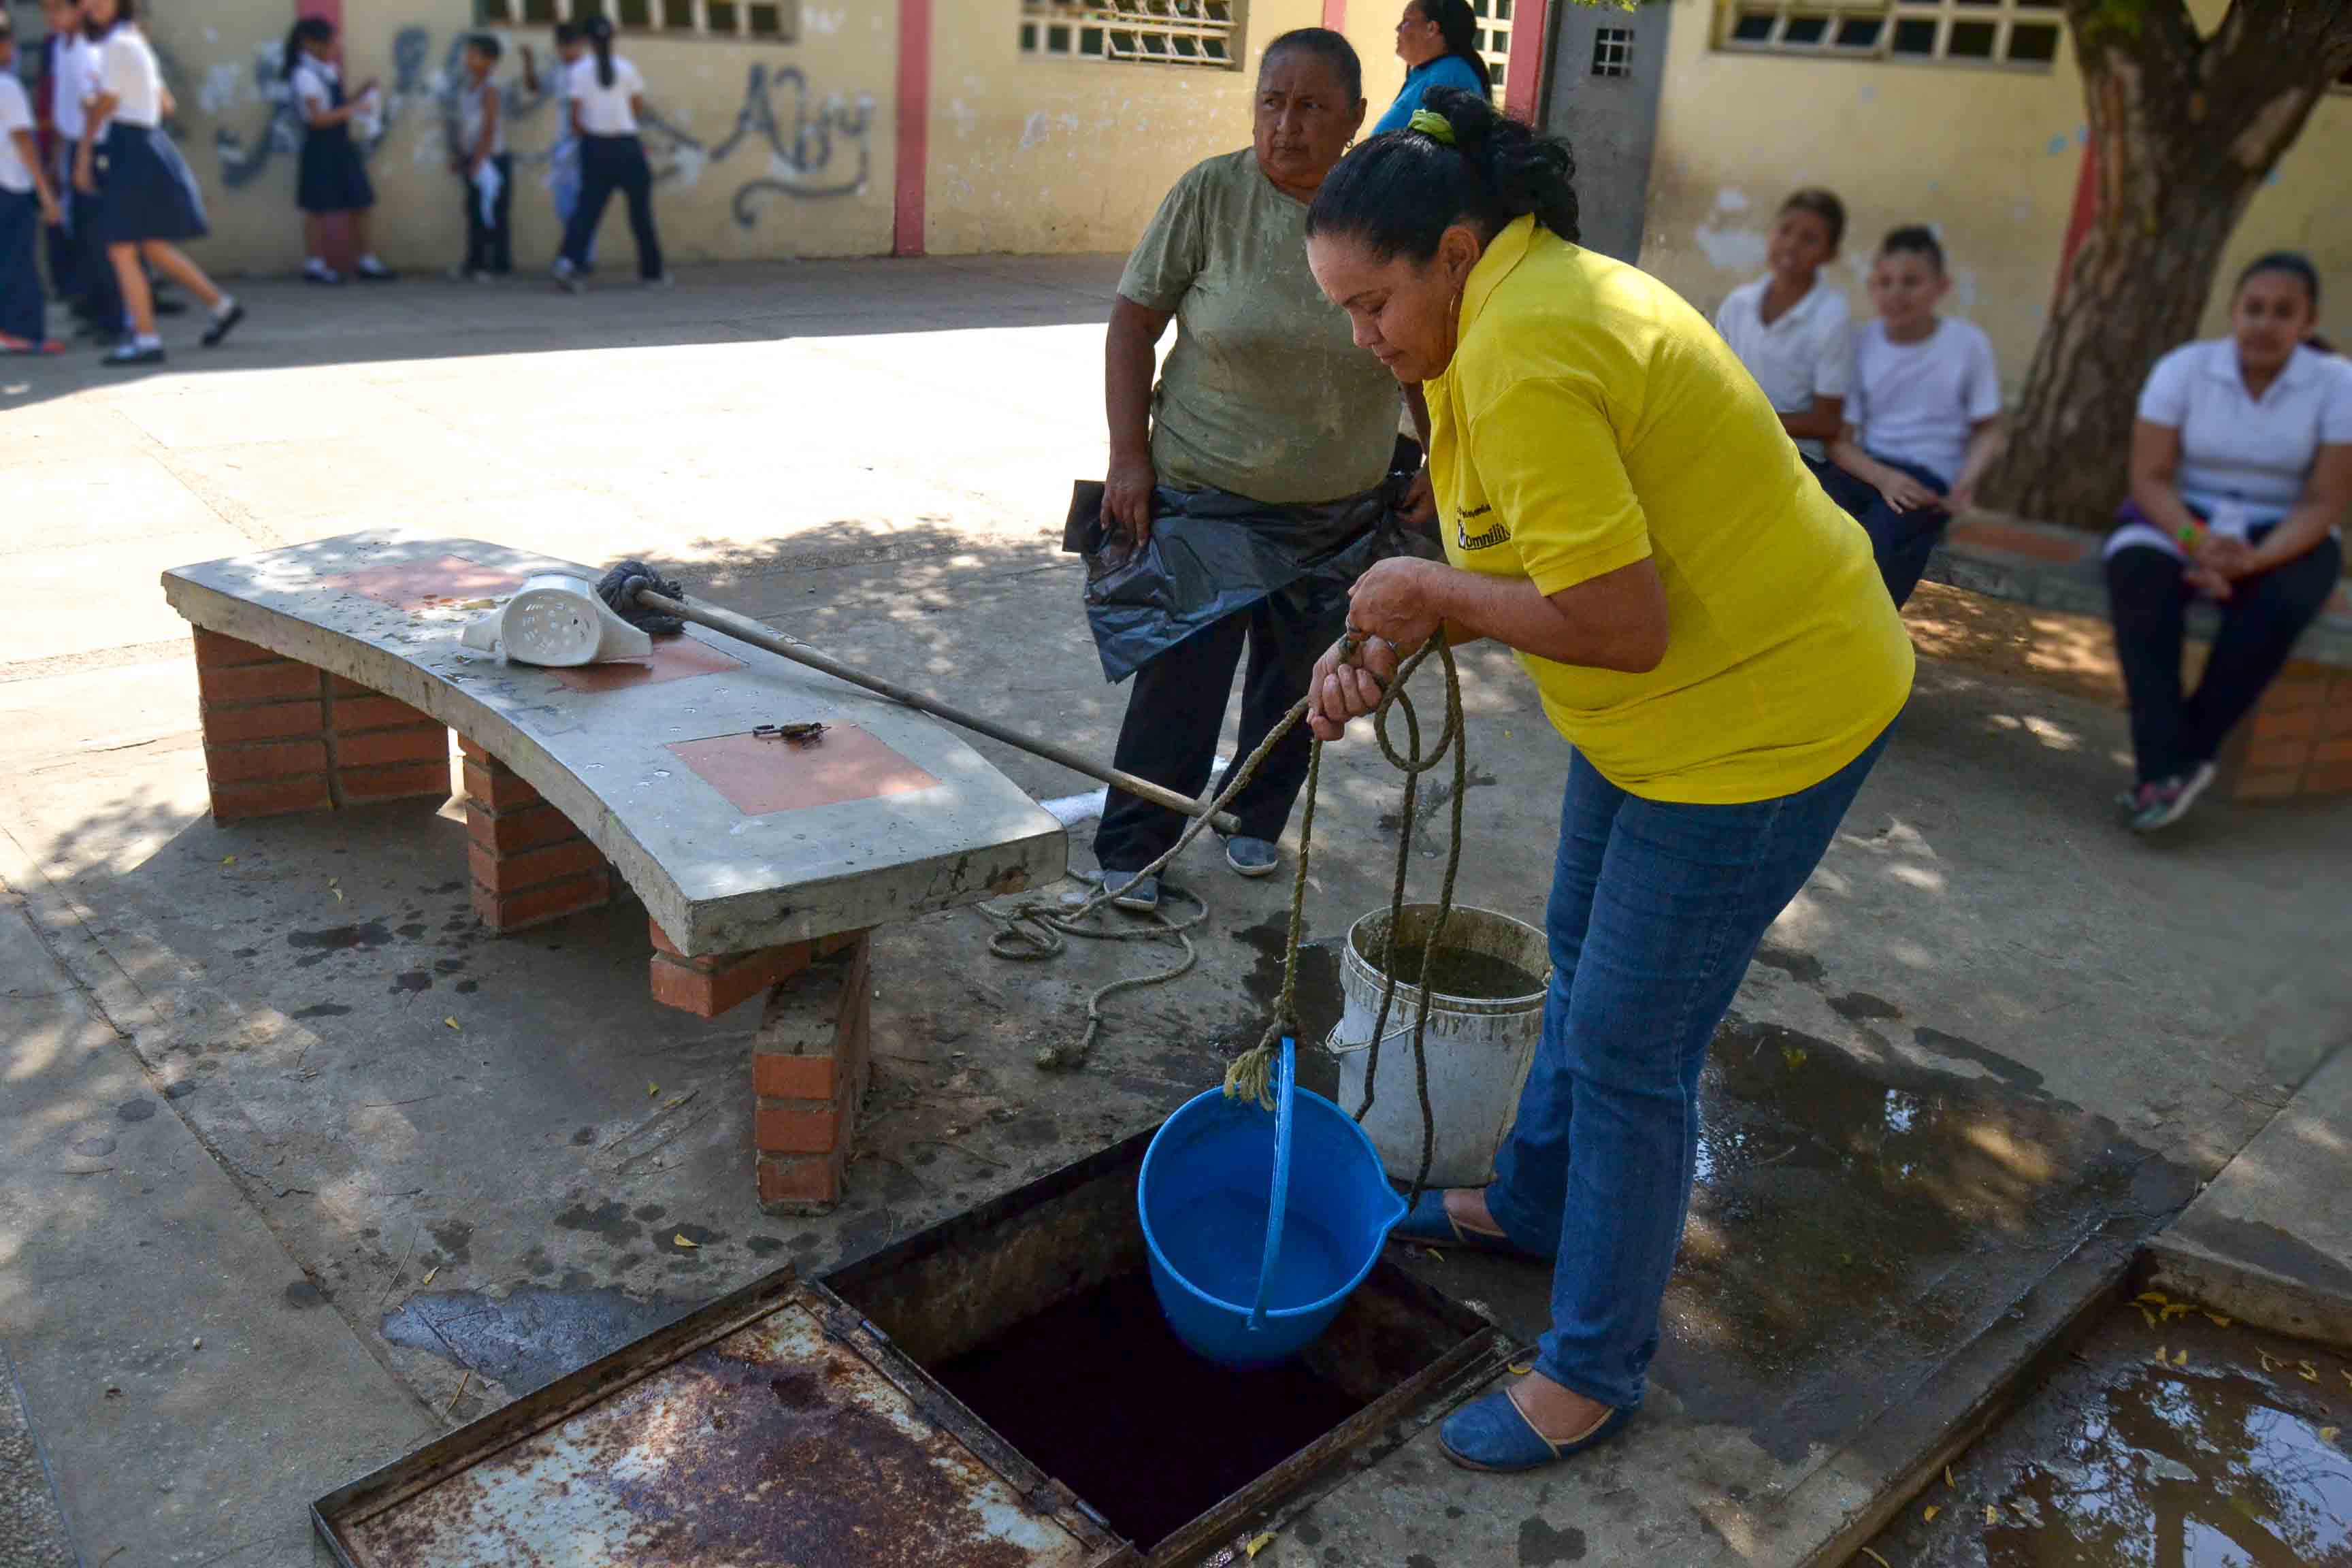 Alumnos de la escuela Cristóbal Colón en Maracaibo reciben clases en el piso por culpa de la inseguridad